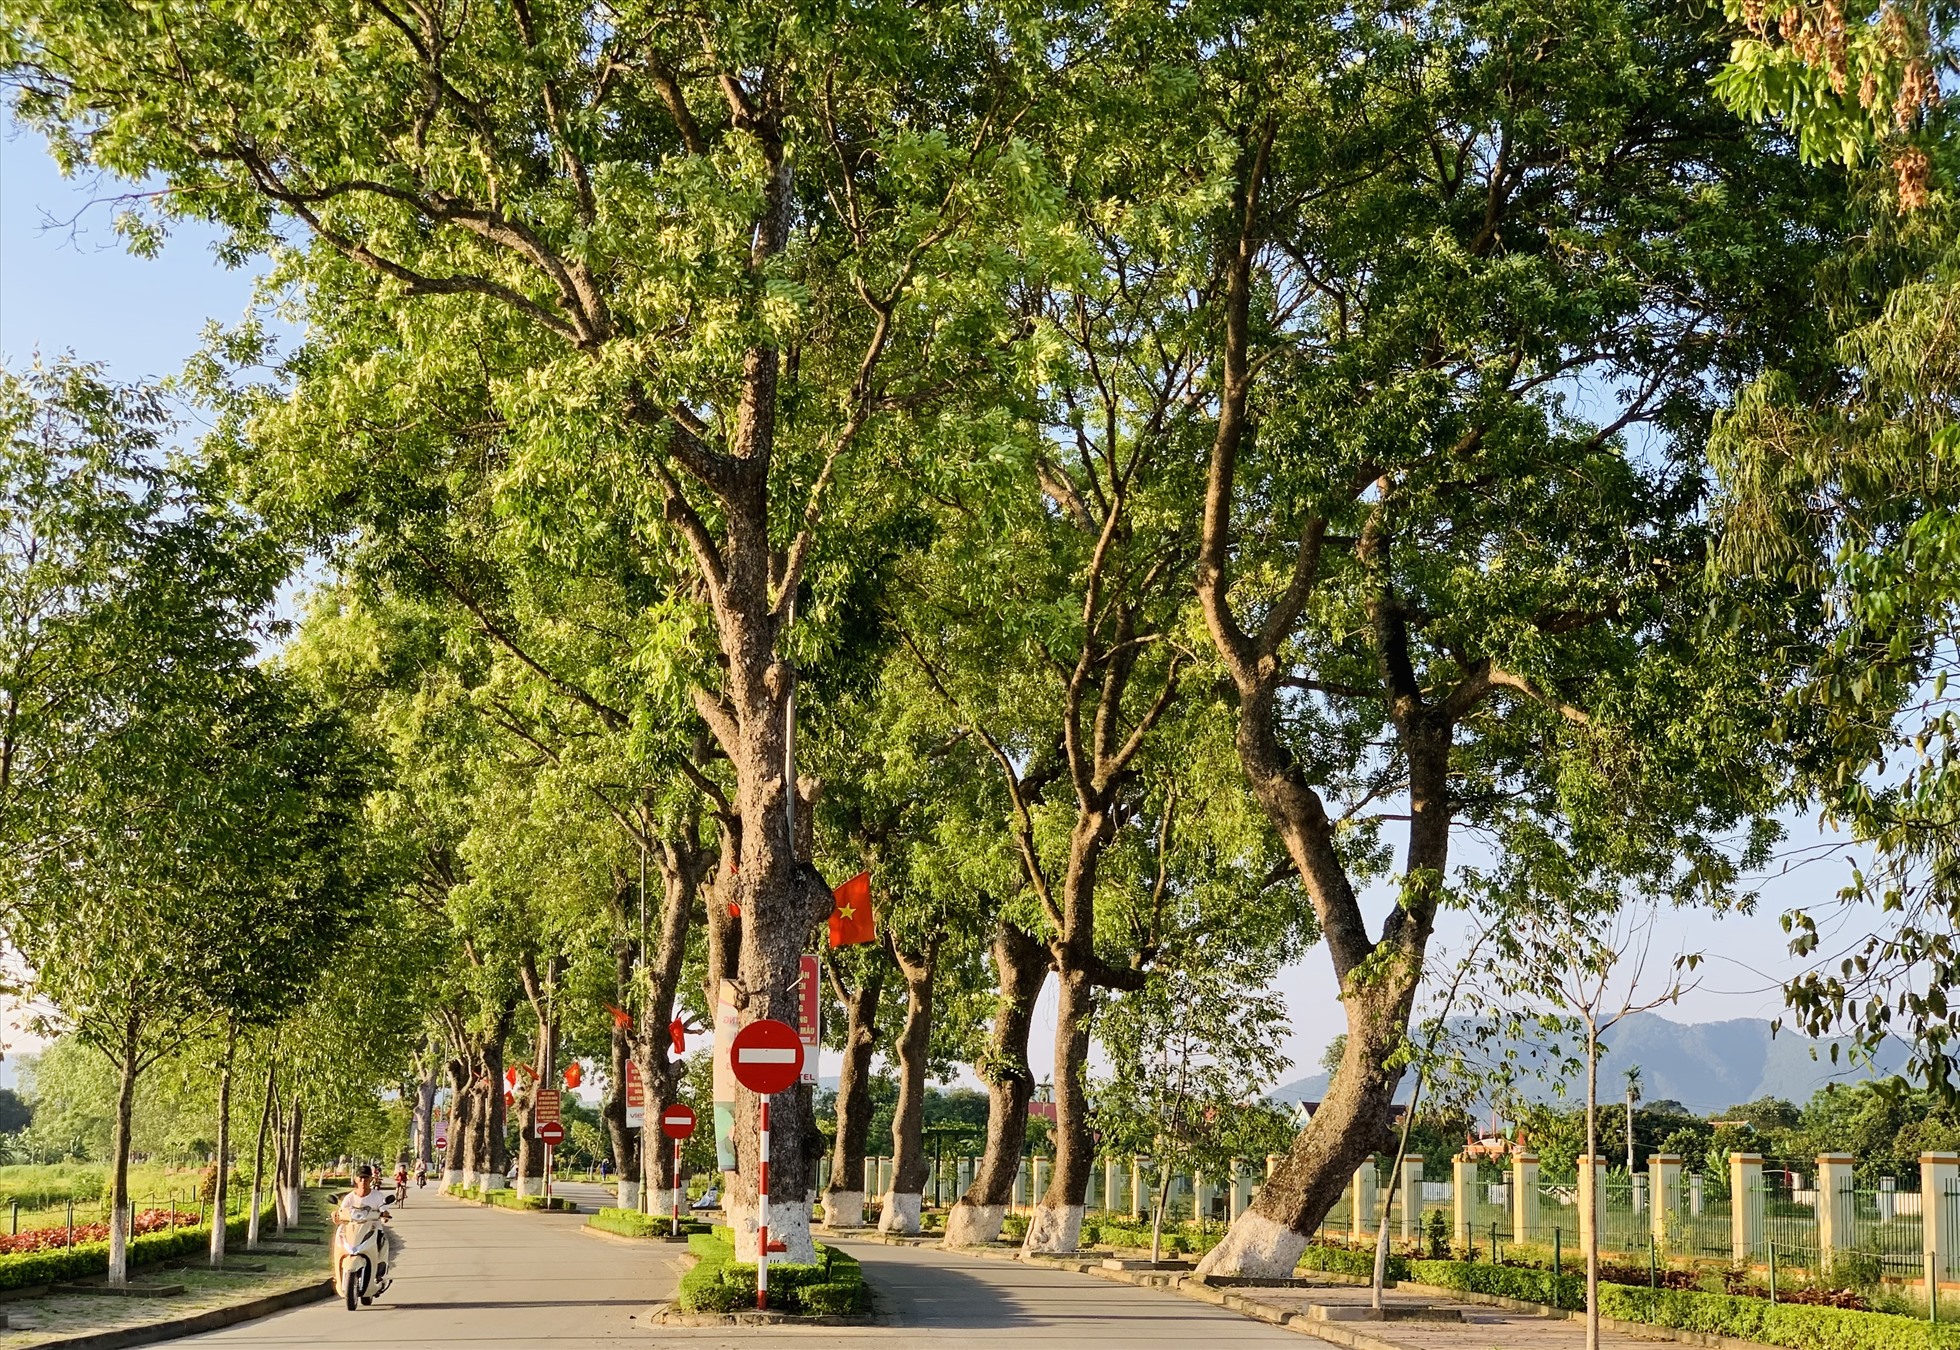 Hàng trăm cây cổ thụ được trồng từ những năm 1960 sau lời kêu goi “Tết trồng cây” của Bác Hồ. Ảnh: Quỳnh Trang